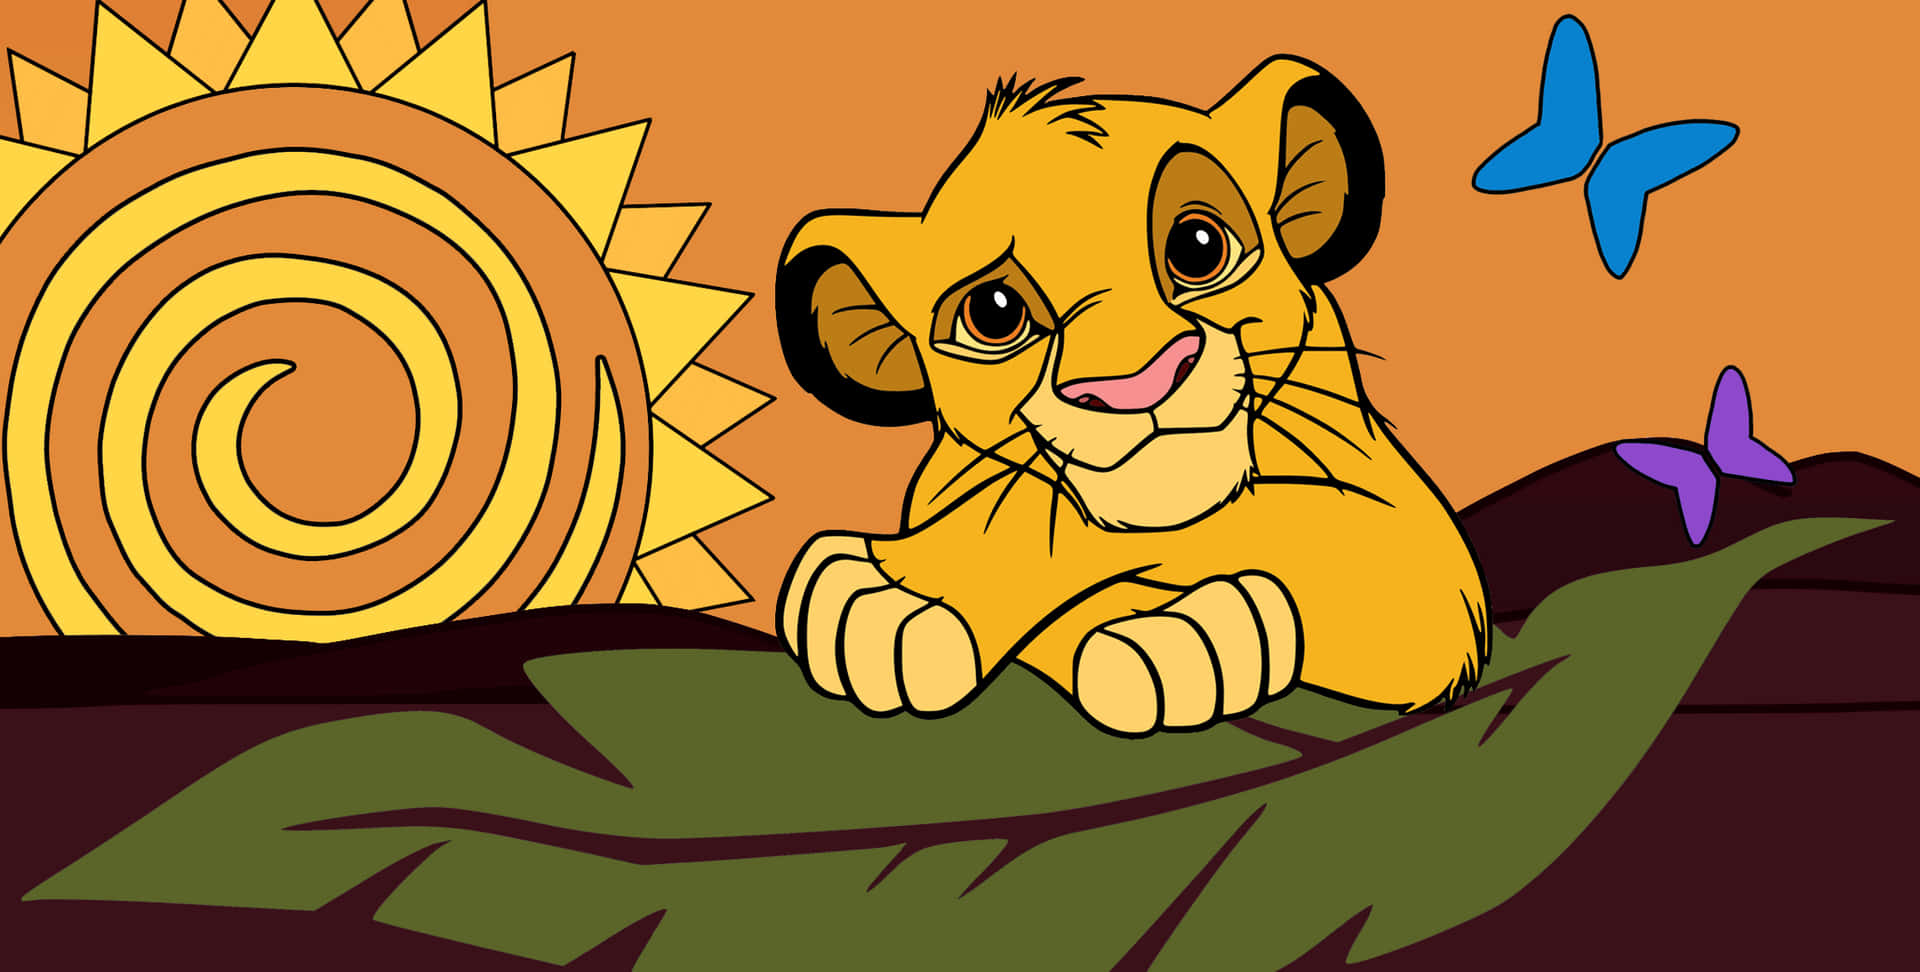 Imagemde Simba Bebê Do Rei Leão.